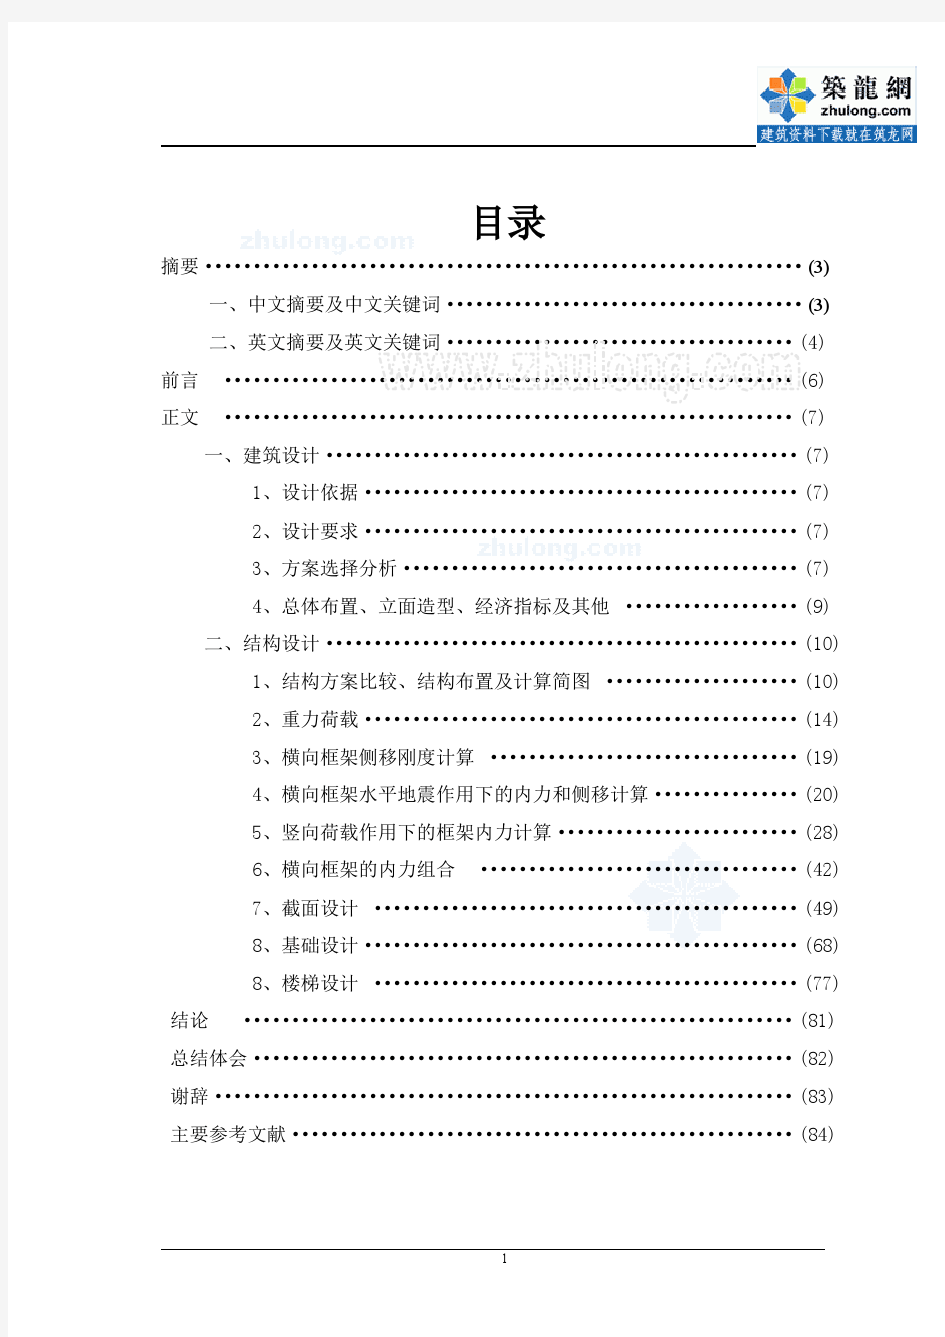 土木工程毕业设计结构计算书(学生公寓)_secret【土木工程】